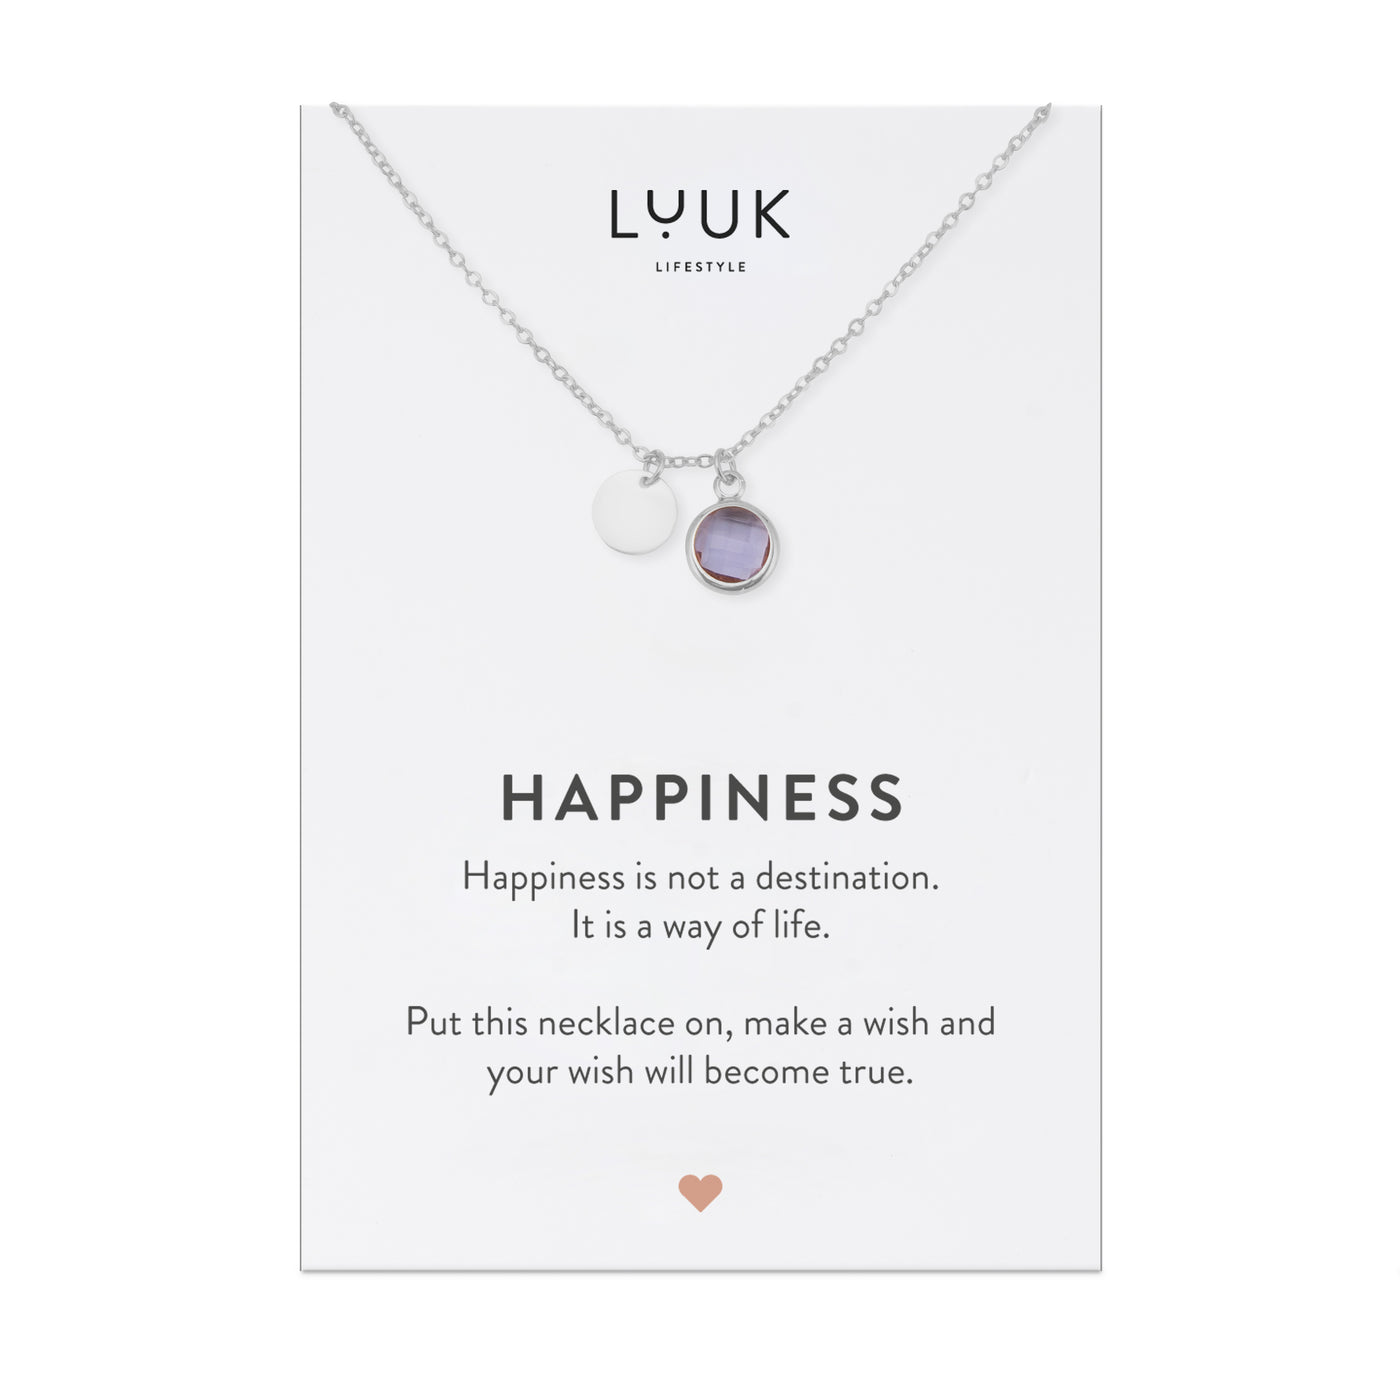 Silberne Halskette mit lilanem Kristall Anhänger auf Happiness Spruchkarte von der Marke Luuk Lifestyle 